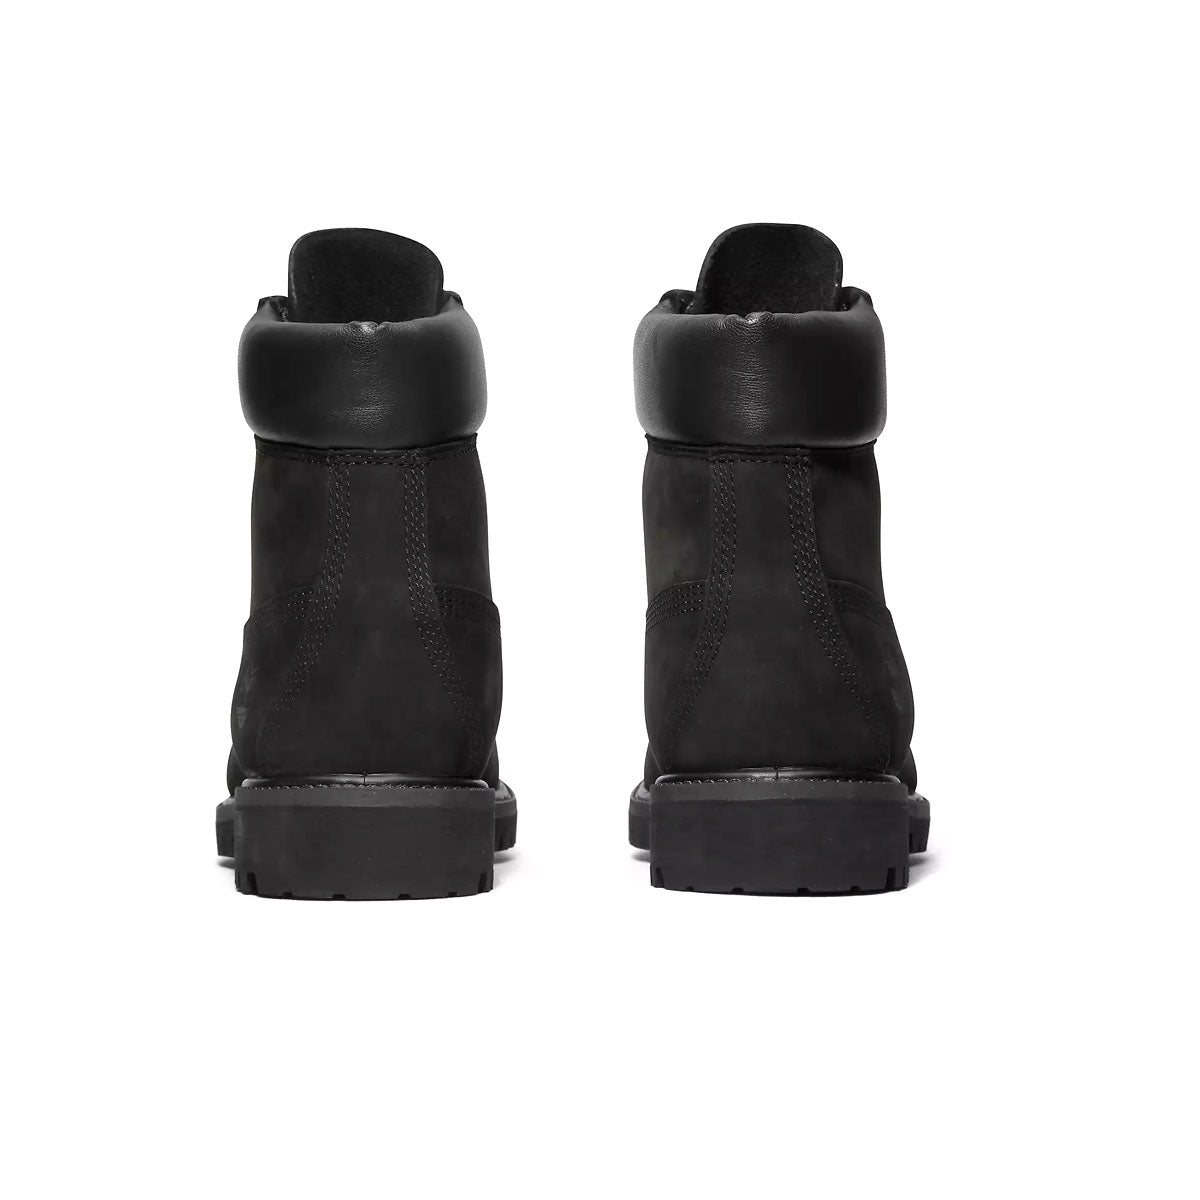 Timberland Men's Premium 6-Inch Waterproof Boots - KickzStore